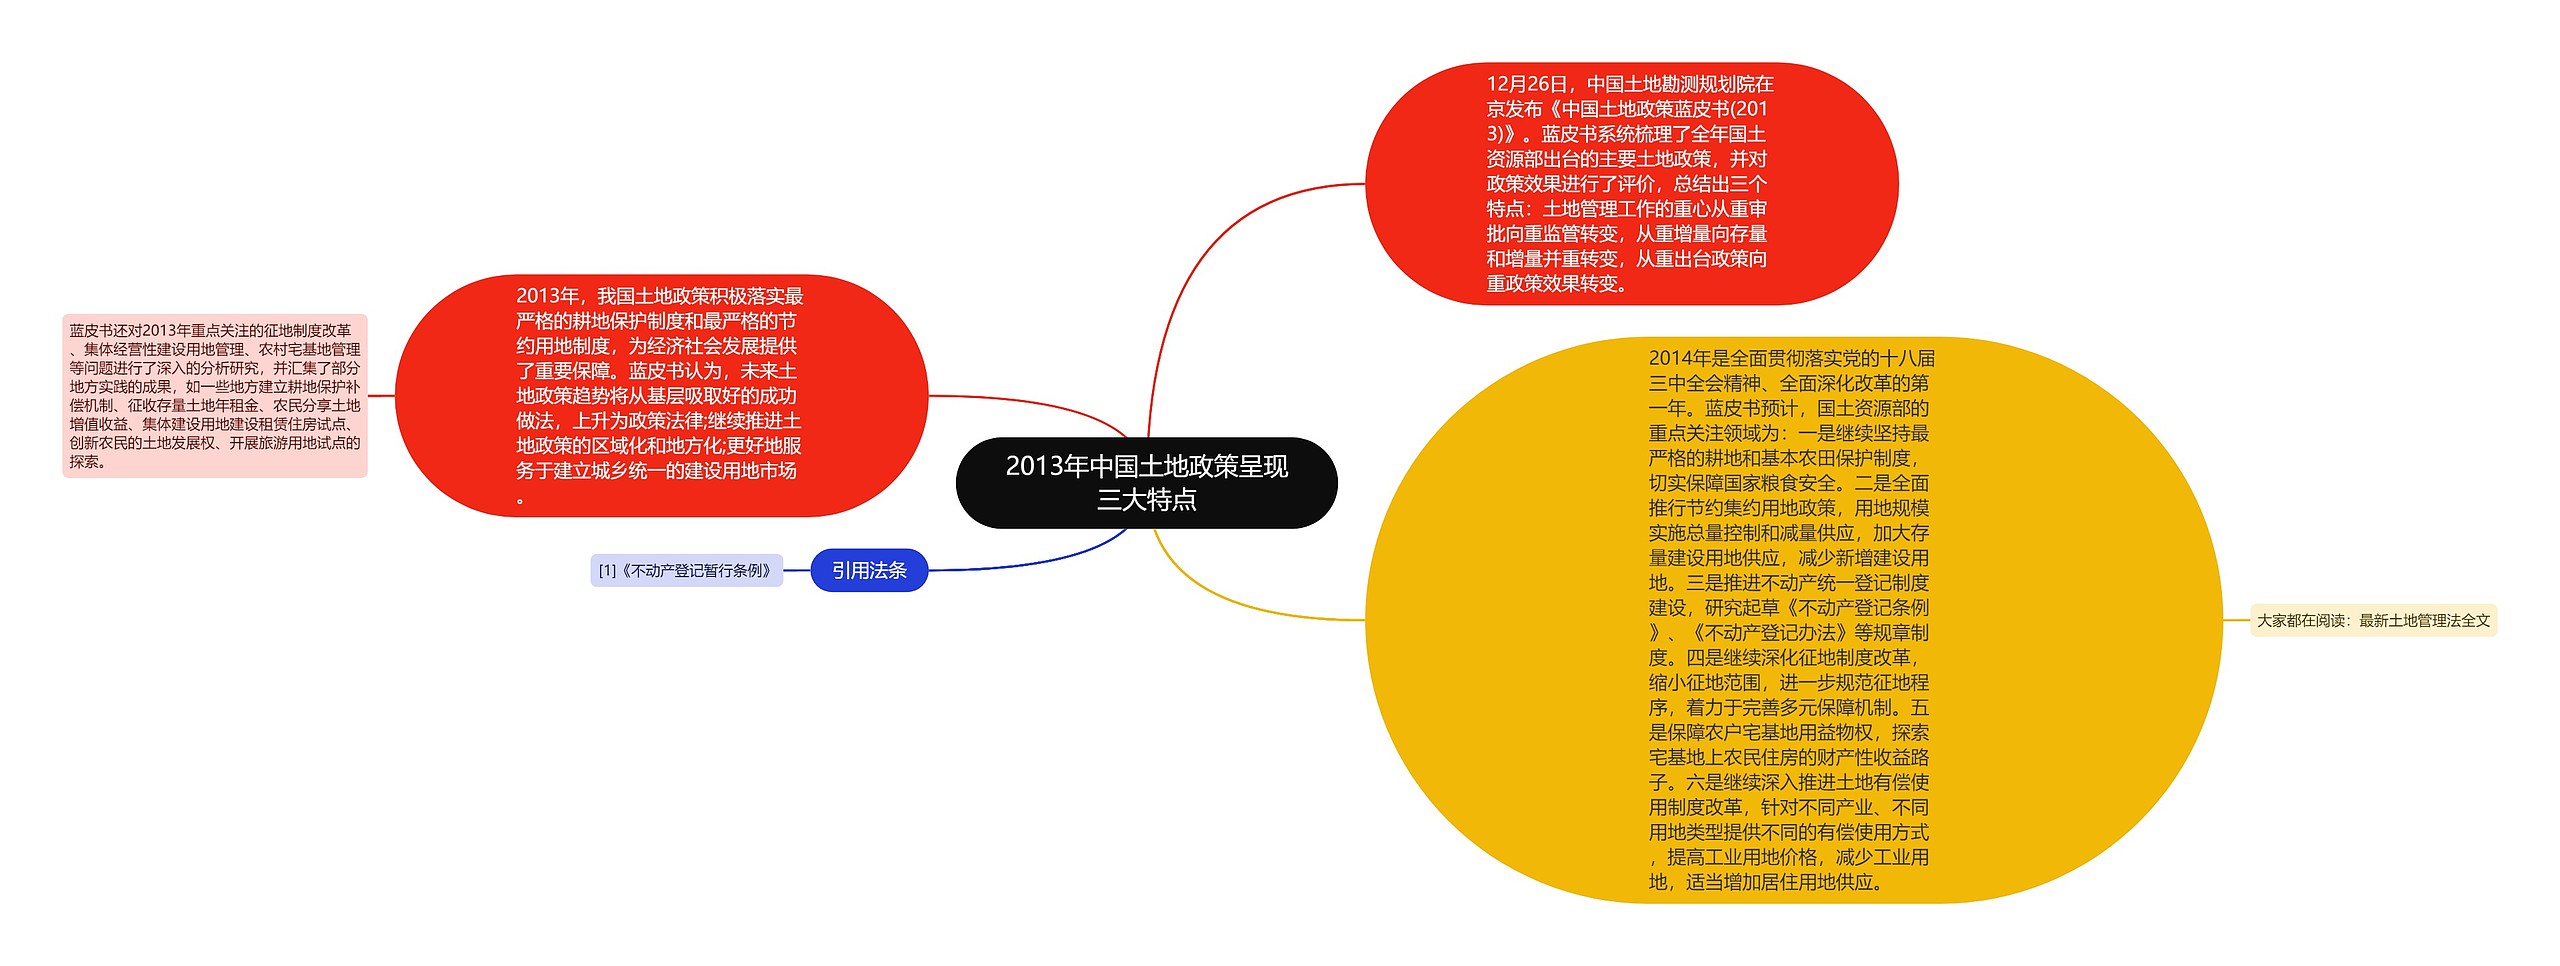 2013年中国土地政策呈现三大特点思维导图